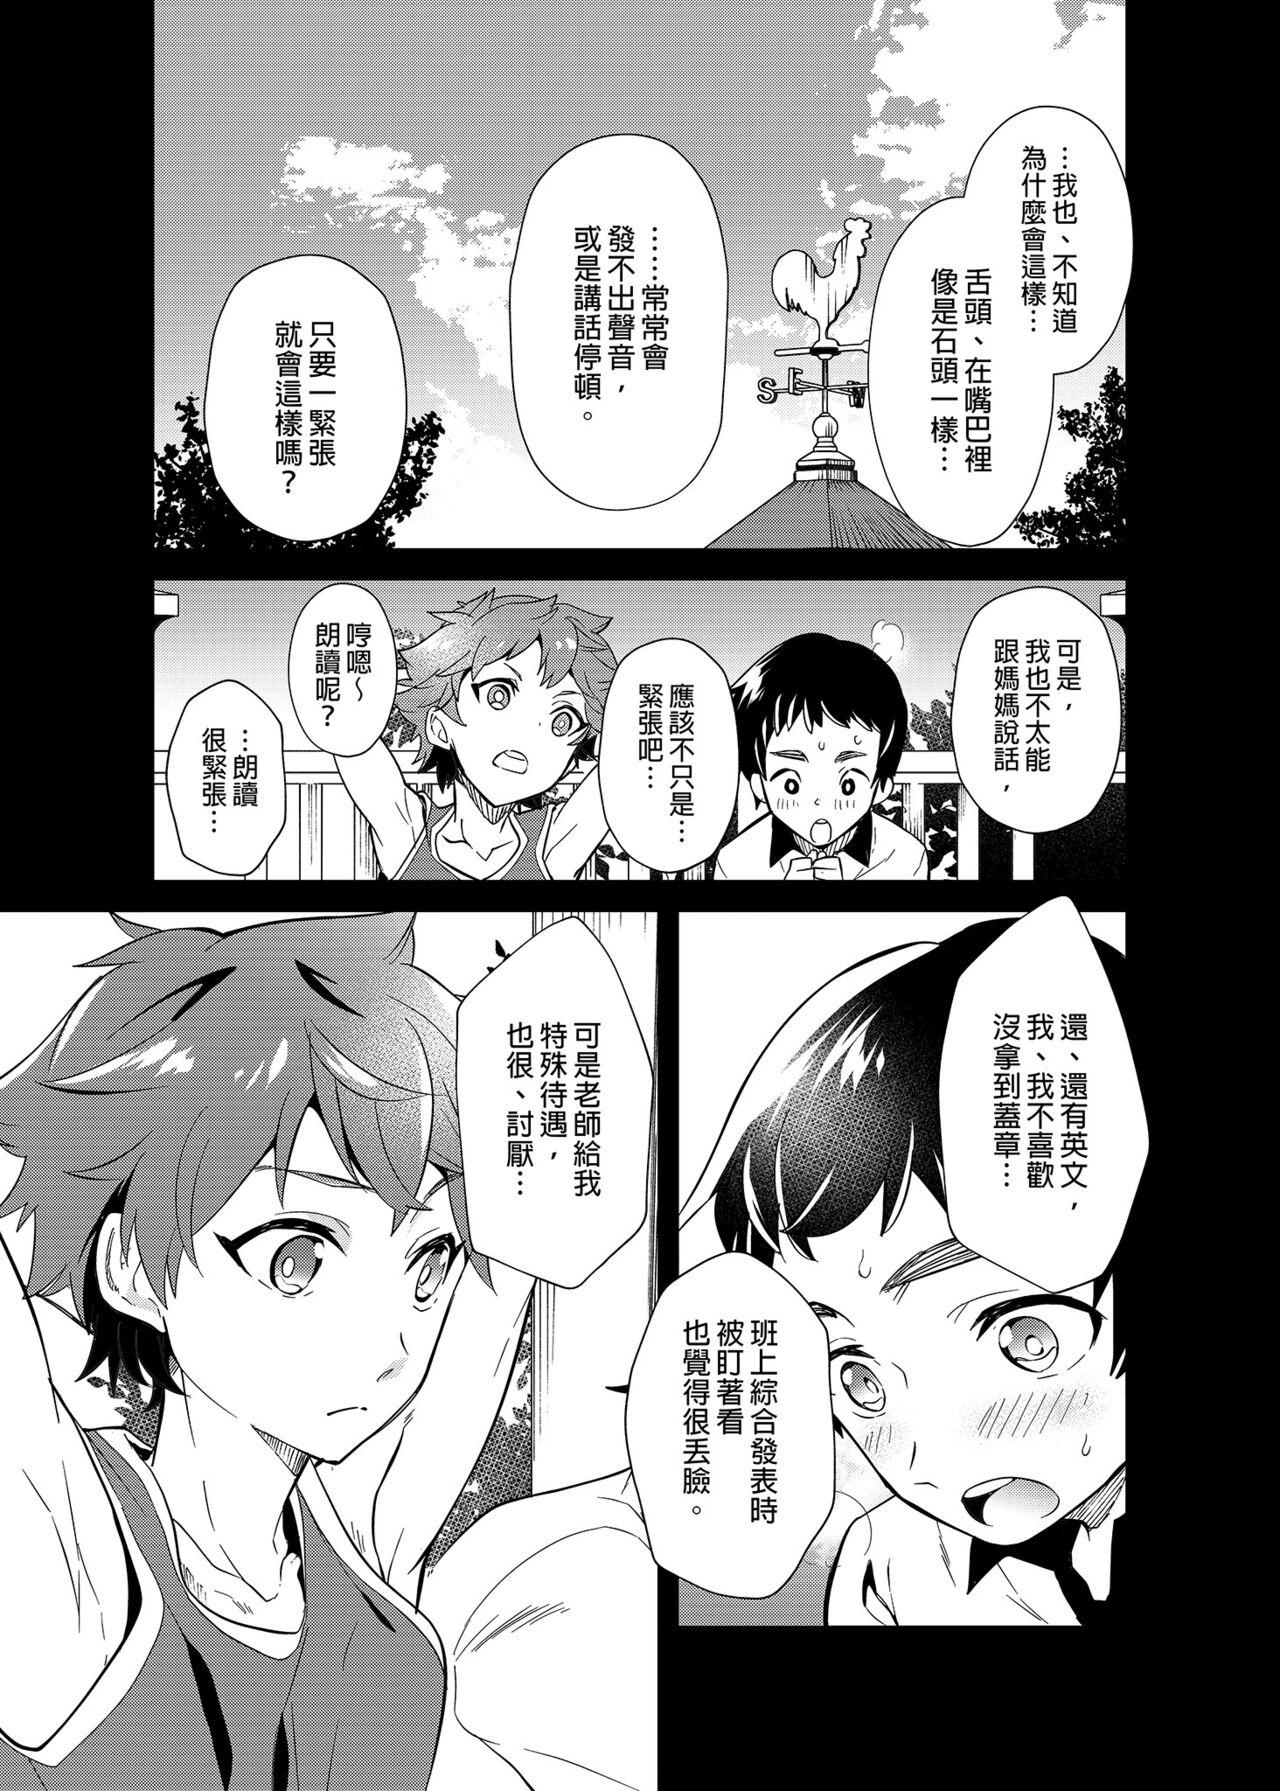 Gozada Kiritsu,ki o tsuke, rei! | 起立、注意、敬禮! - Original And - Page 12